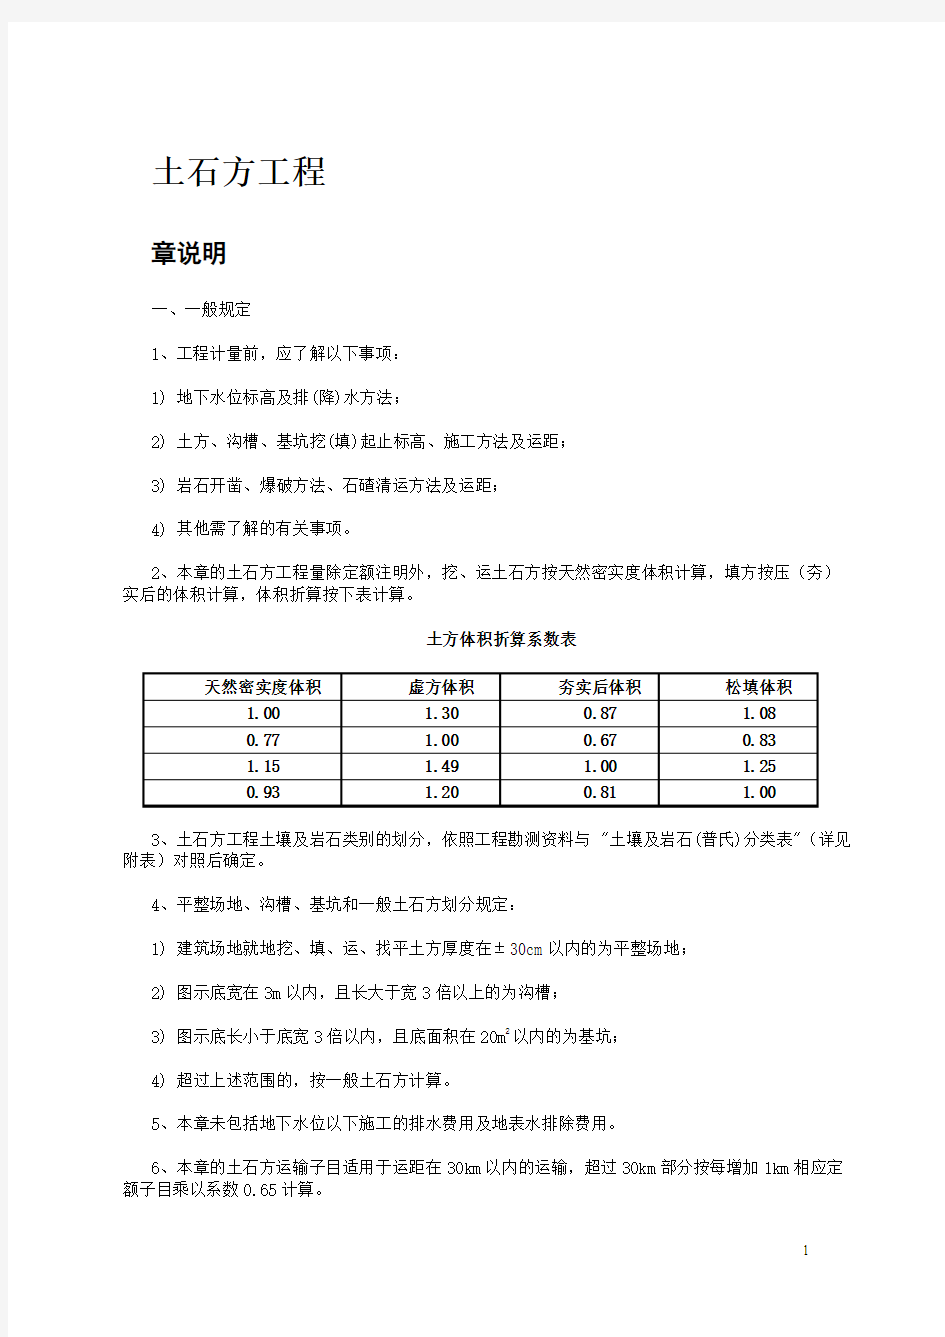 广东省2010建筑安装综合定额说明及计算规则